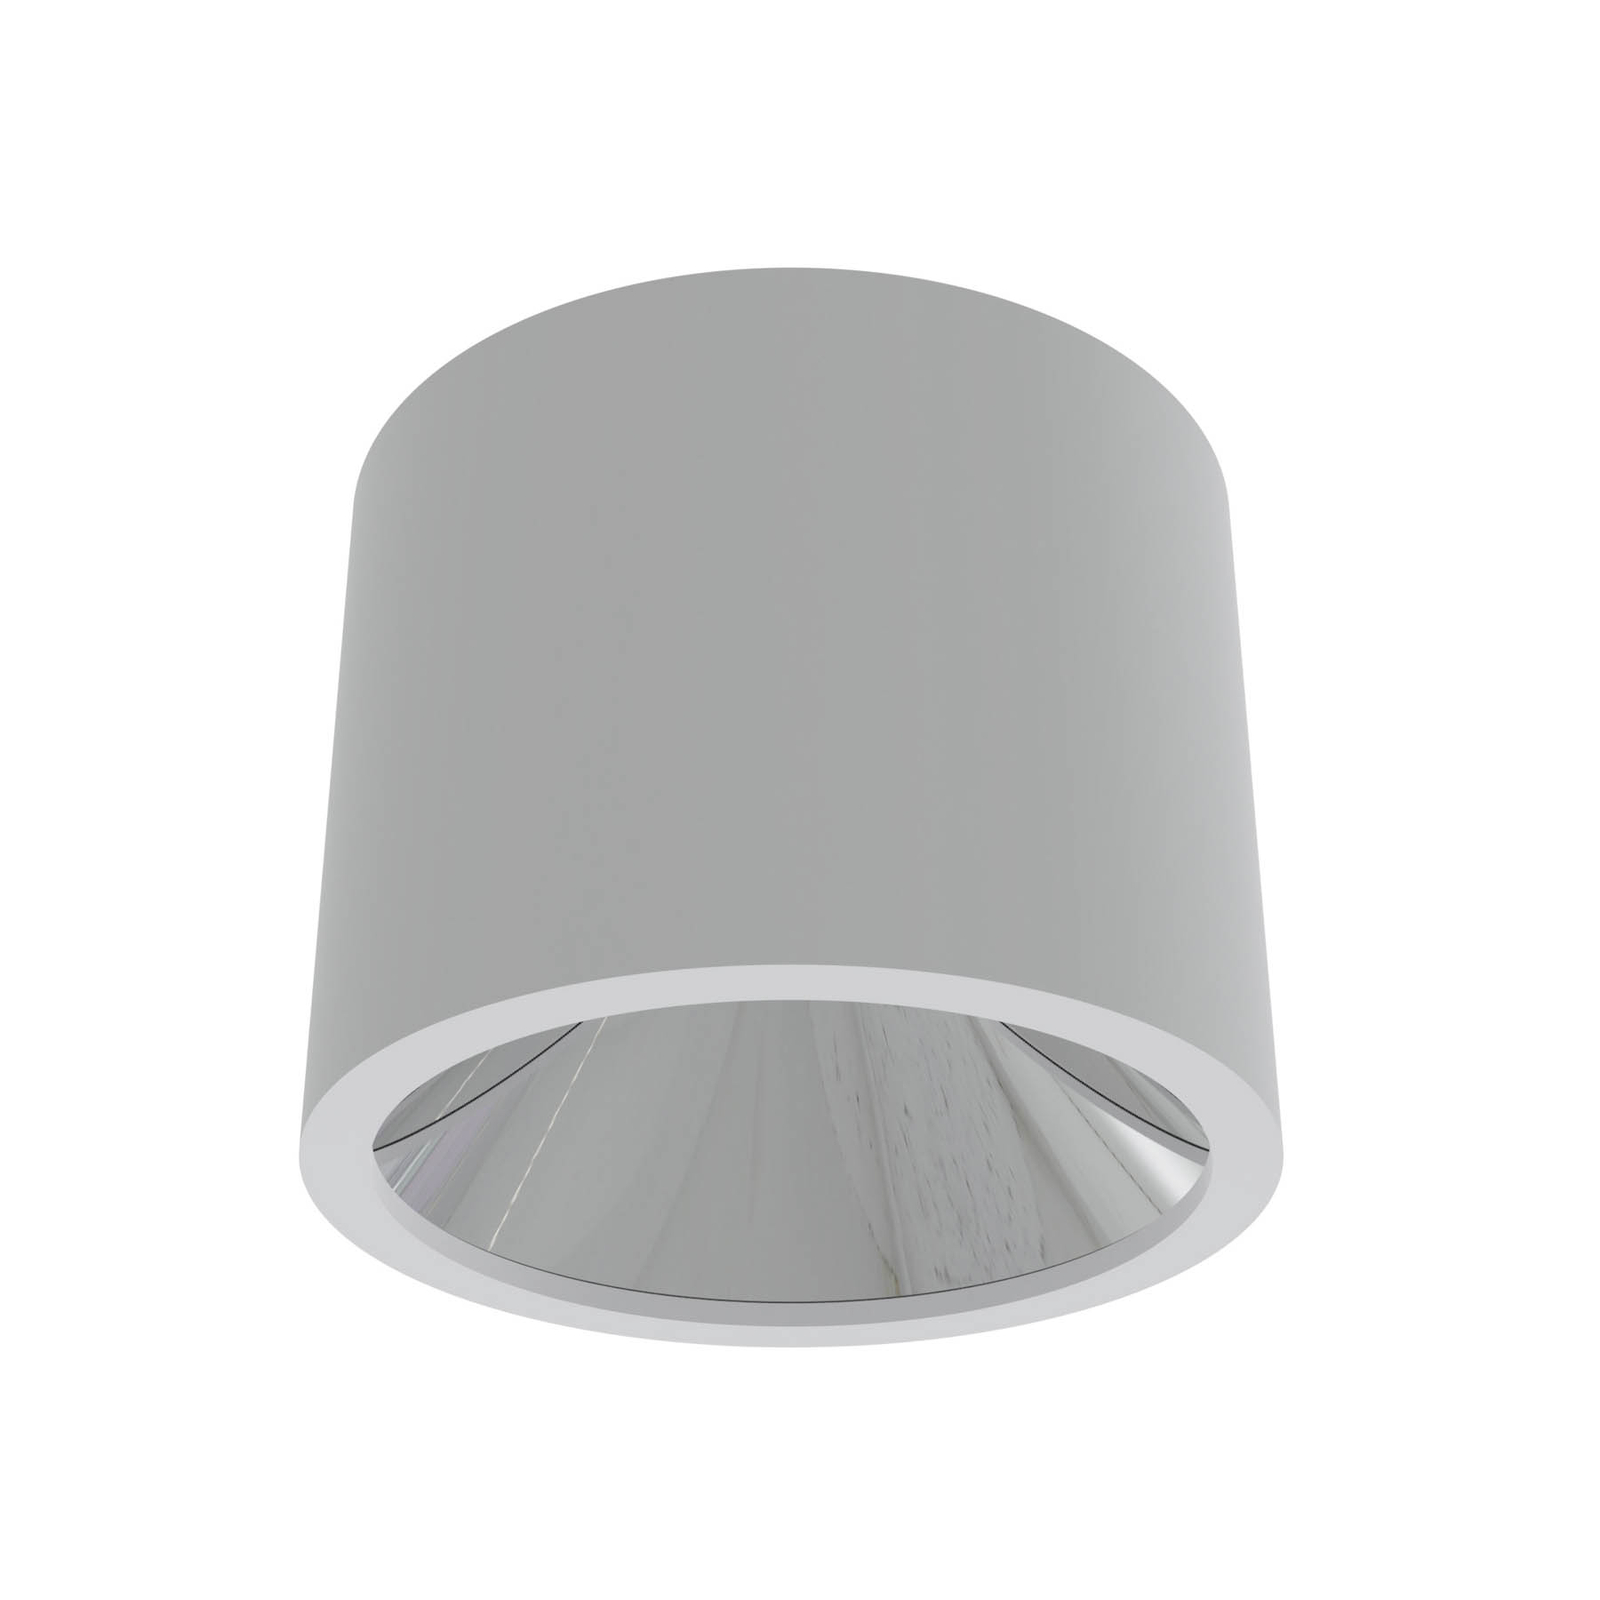 Spot pour plafond LED ALG54, Ø 21,3 cm blanc